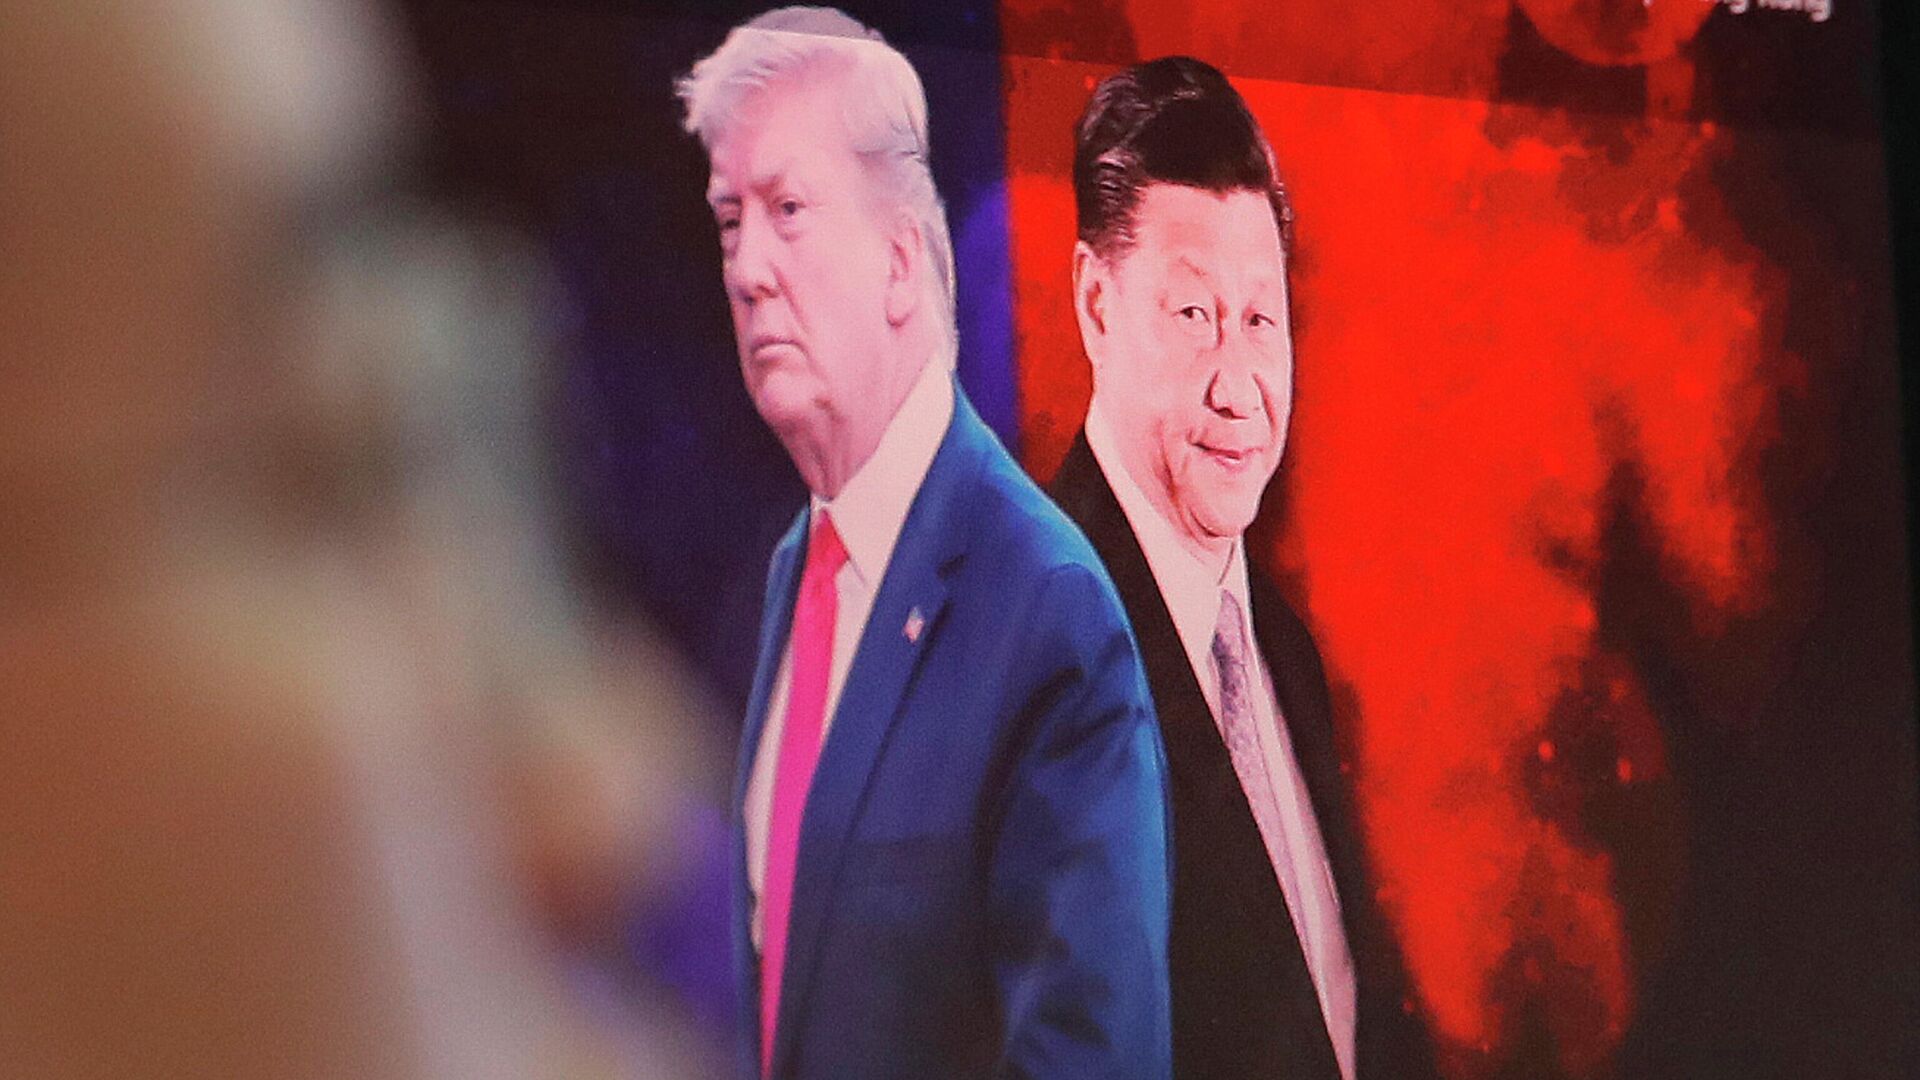 Изображение президента США Дональда Трампа и председателя КНР Си Цзиньпина на мониторе компьютера - РИА Новости, 1920, 22.09.2020